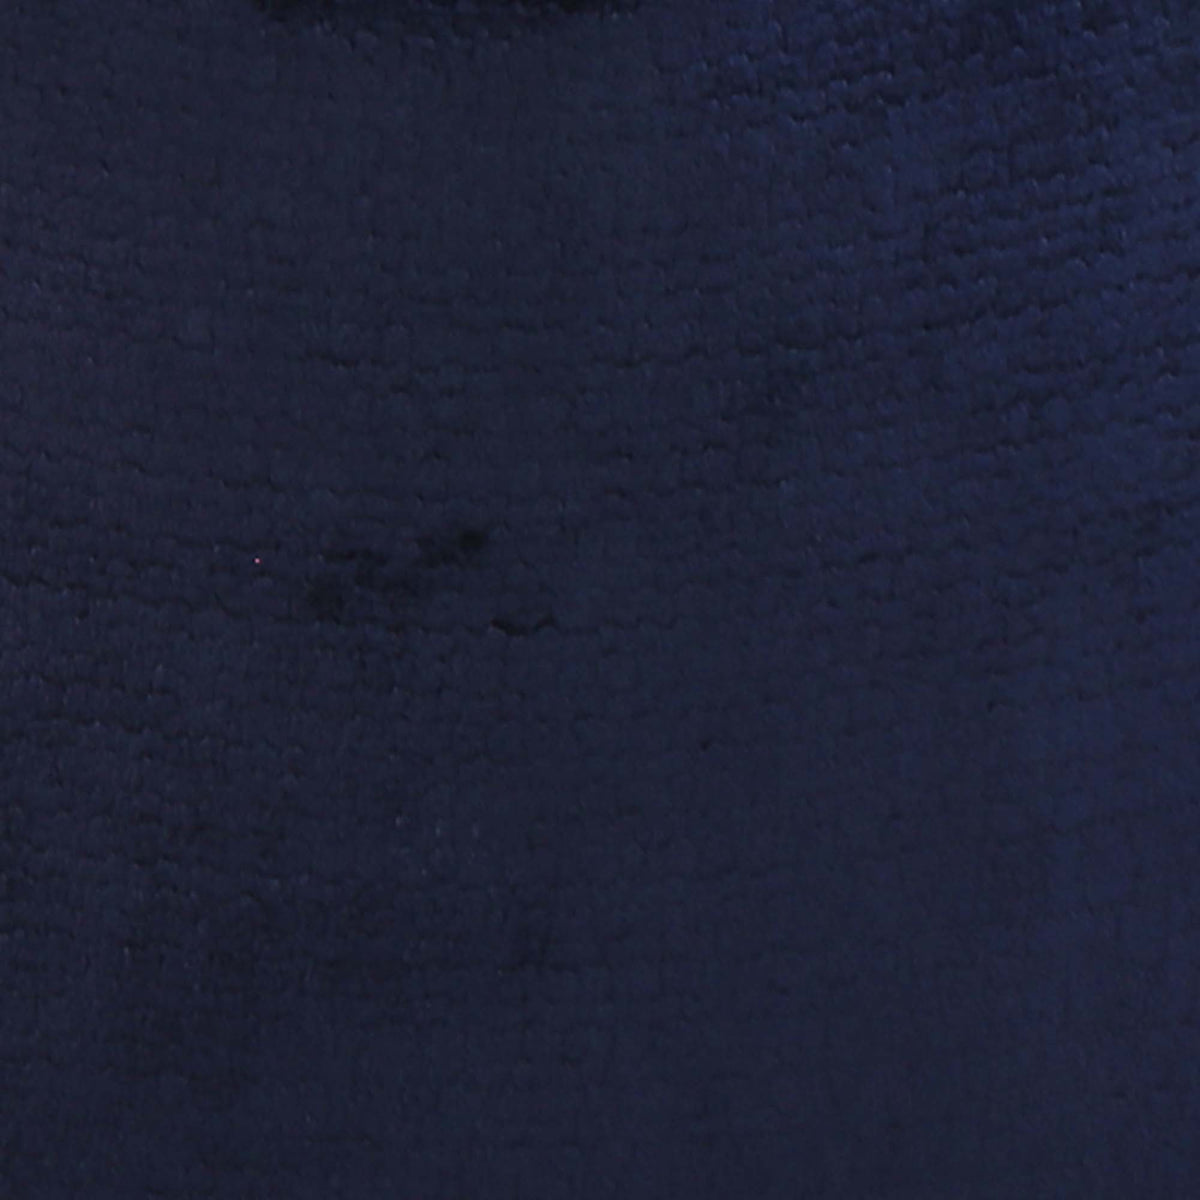 Rebus Aegean Velvet / 4x4 inch Fabric Swatch